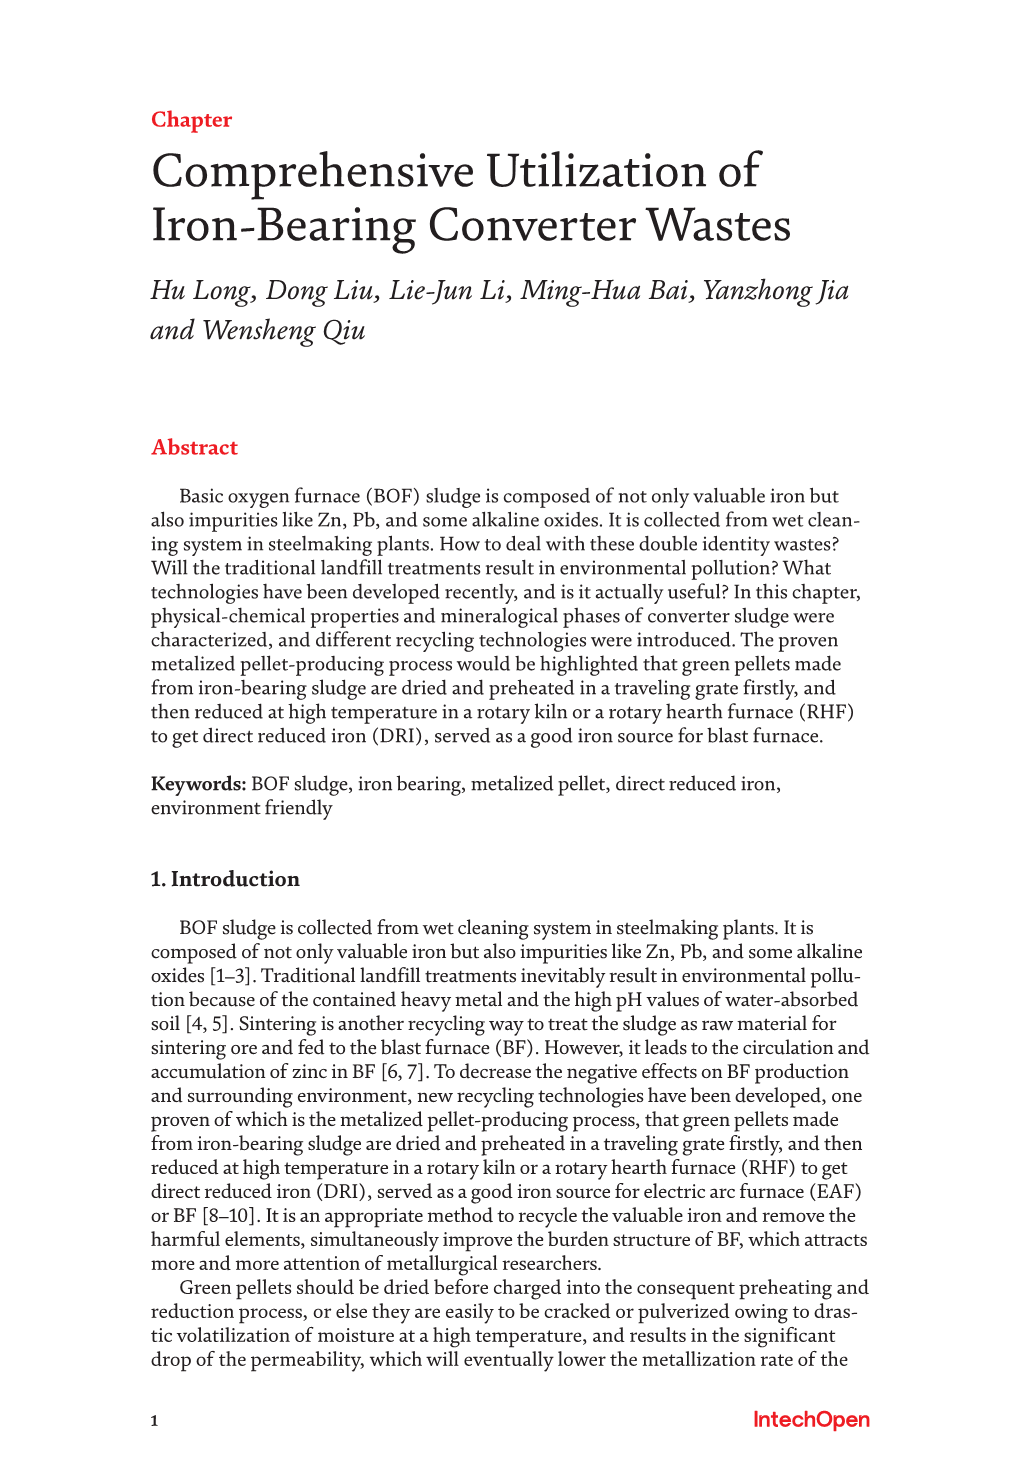 Comprehensive Utilization of Iron-Bearing Converter Wastes Hu Long, Dong Liu, Lie-Jun Li, Ming-Hua Bai, Yanzhong Jia and Wensheng Qiu